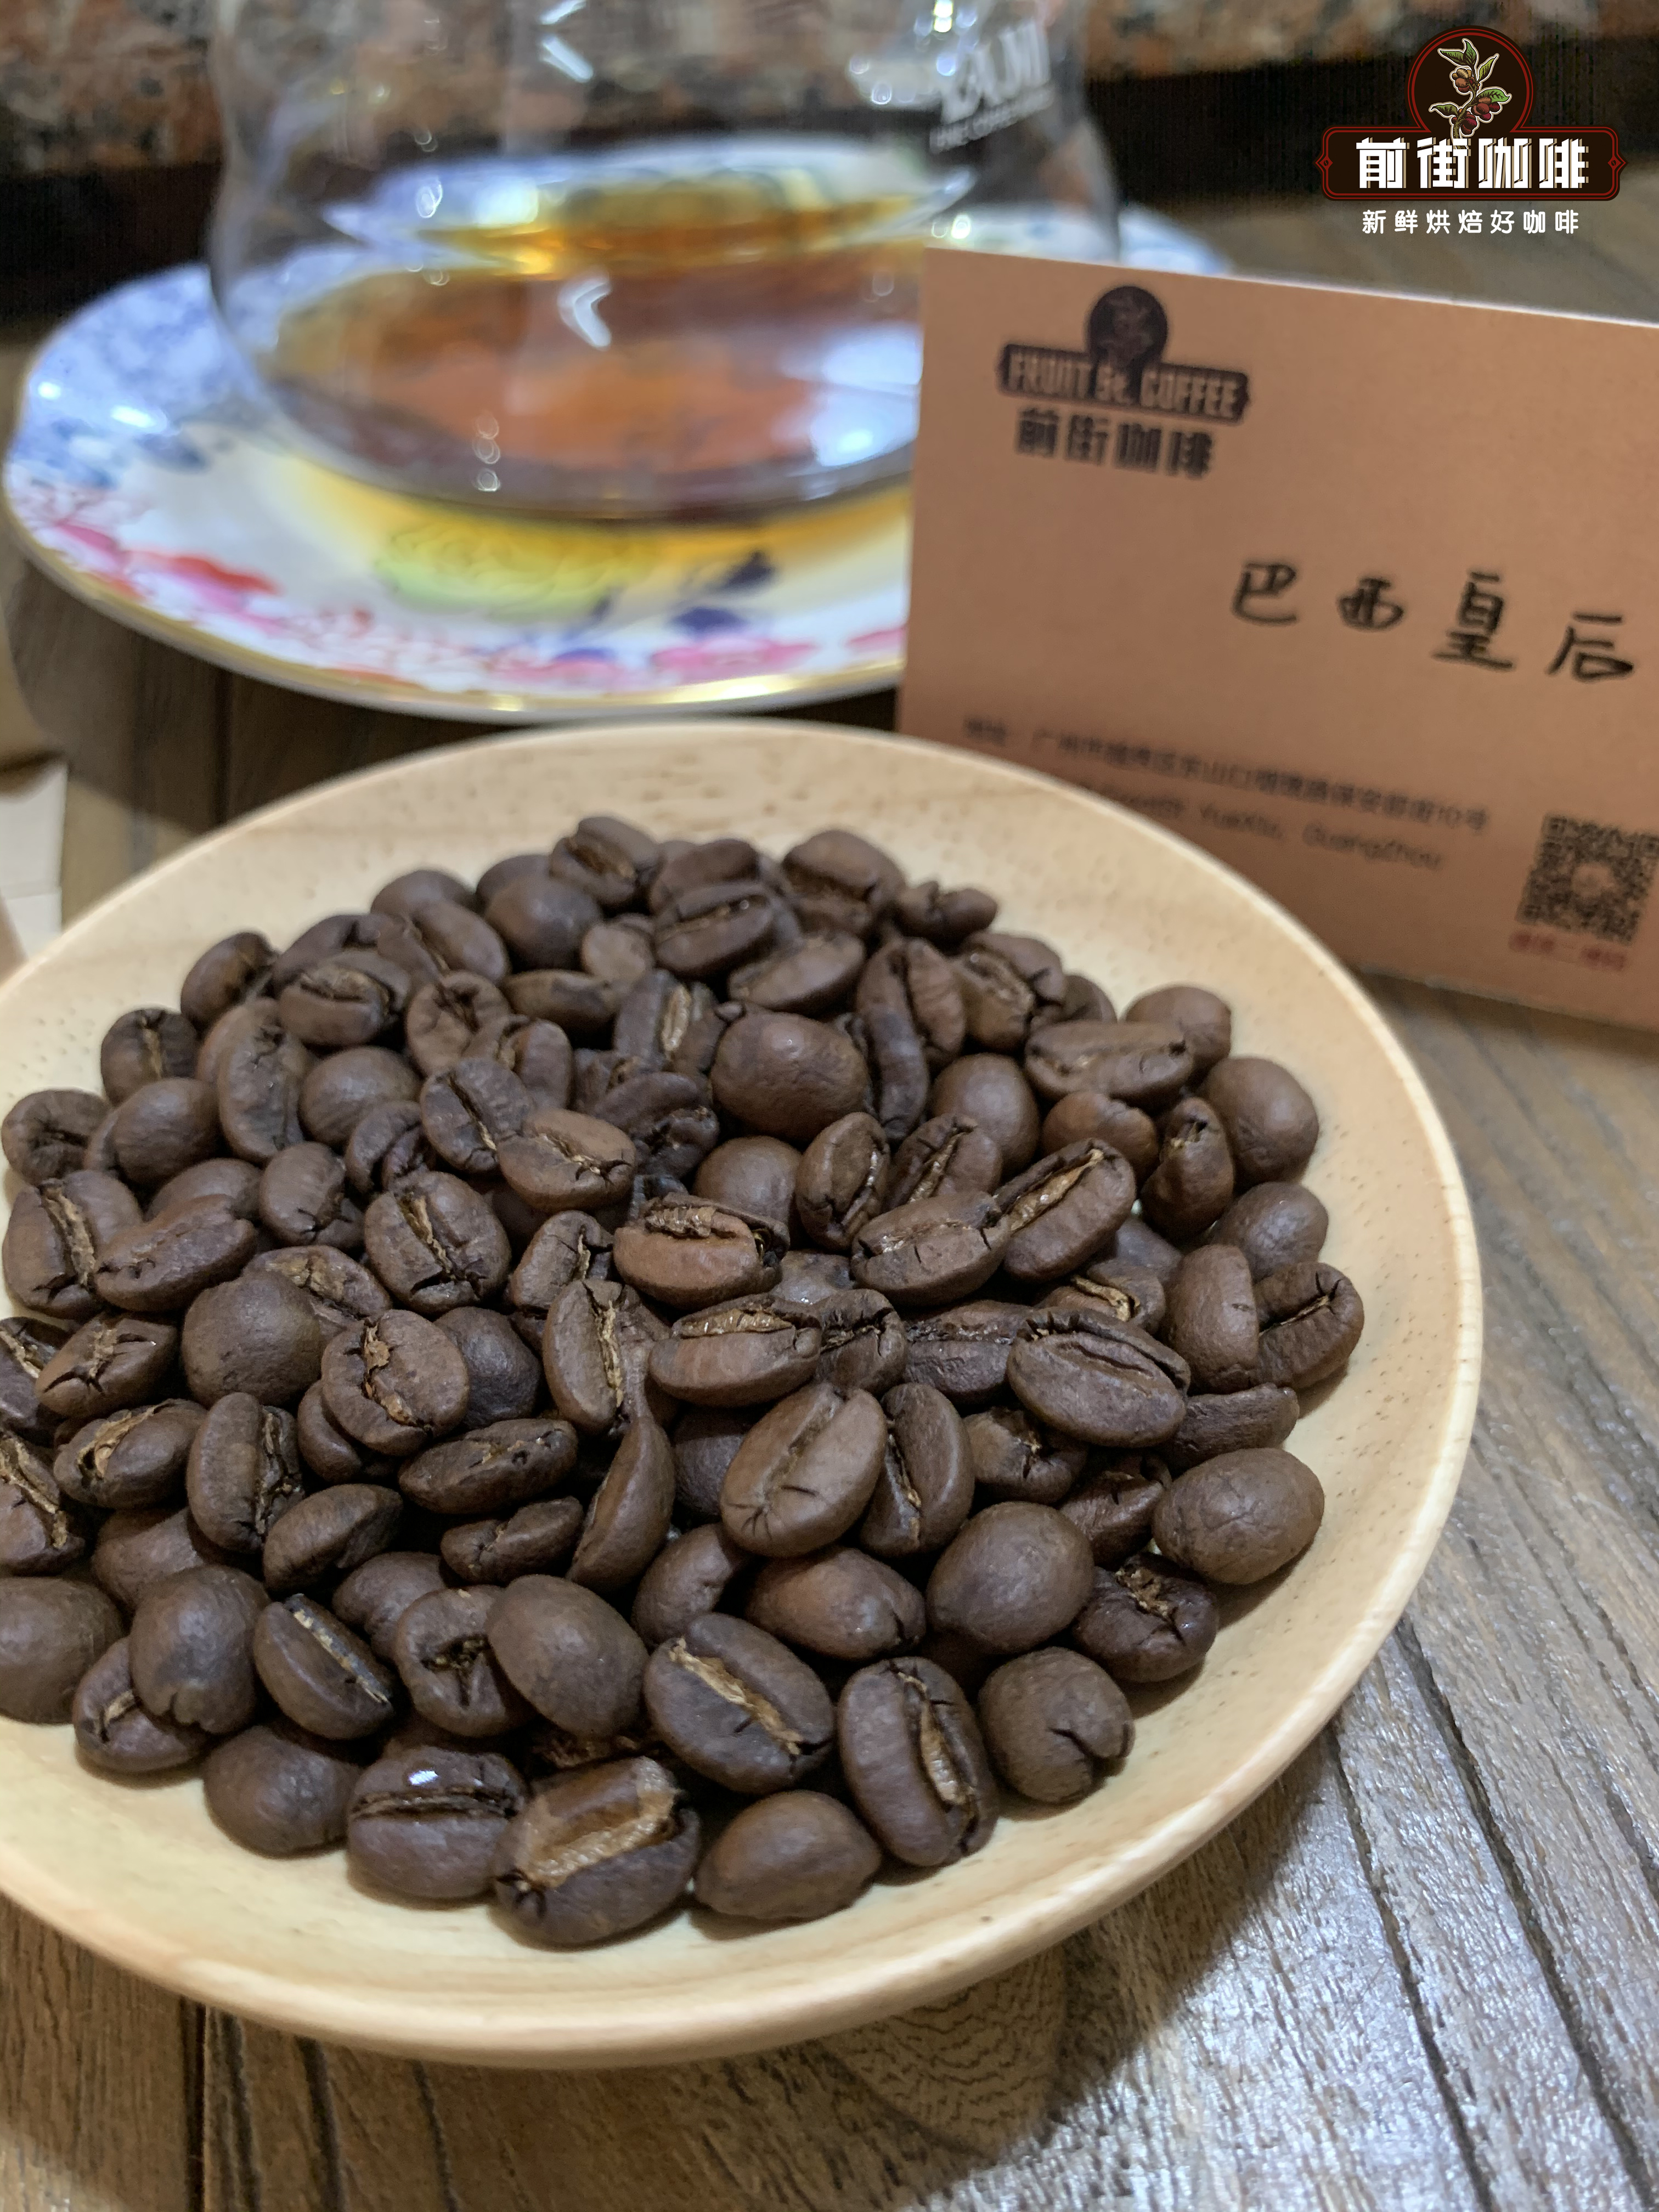 世界第一咖啡产国巴西产的咖啡为什么不是精品咖啡和特级咖啡？